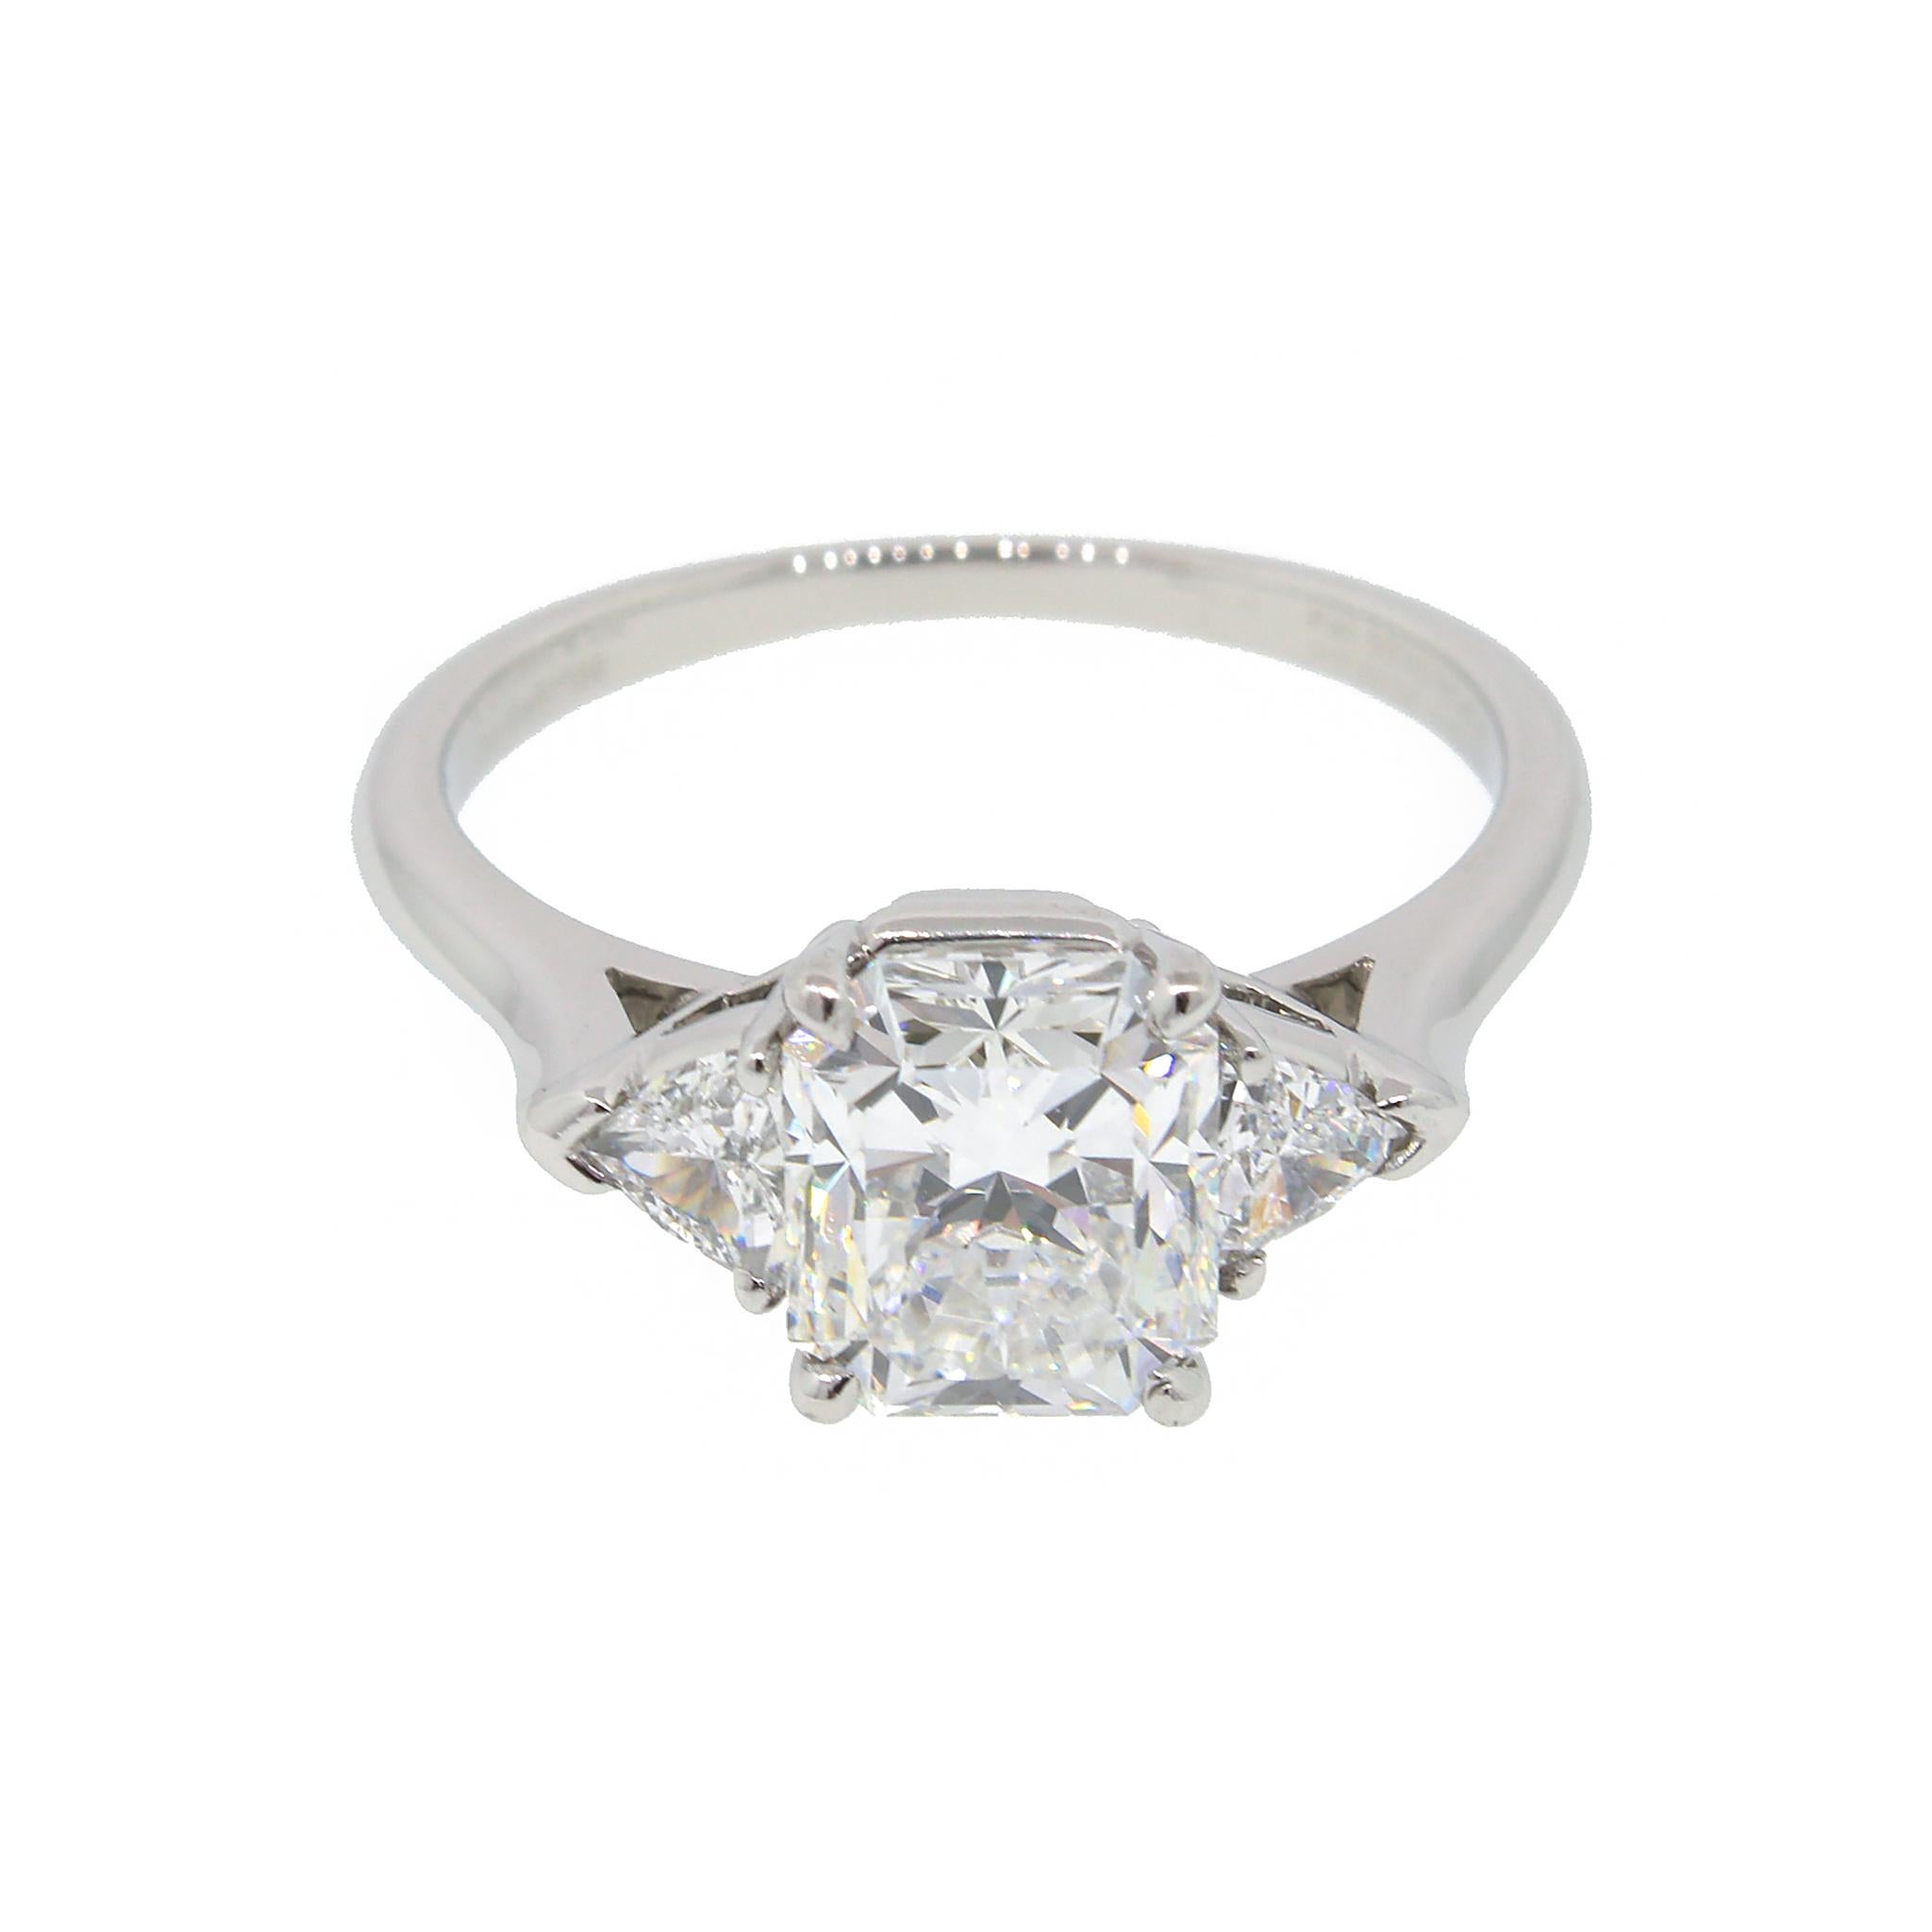 Platinum
Diamond: 2.05 ct twd
Color: E
Clarity: VS1
Ring Size: 7.25